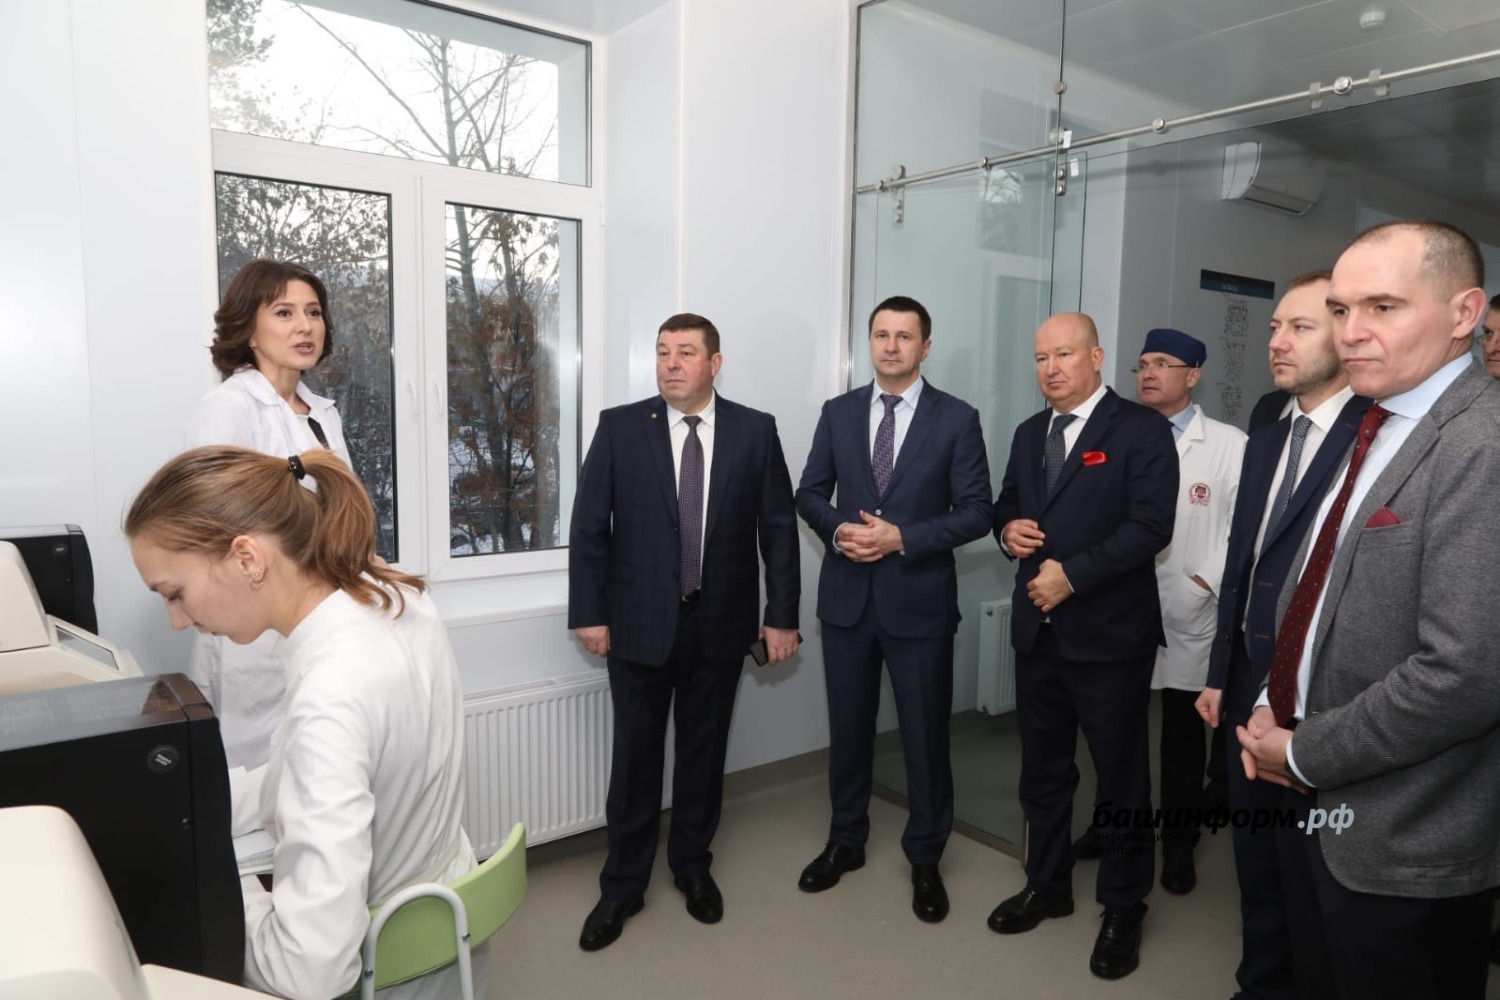 В столице Башкирии открылся институт урологии и онкологии при клинике БГМУ